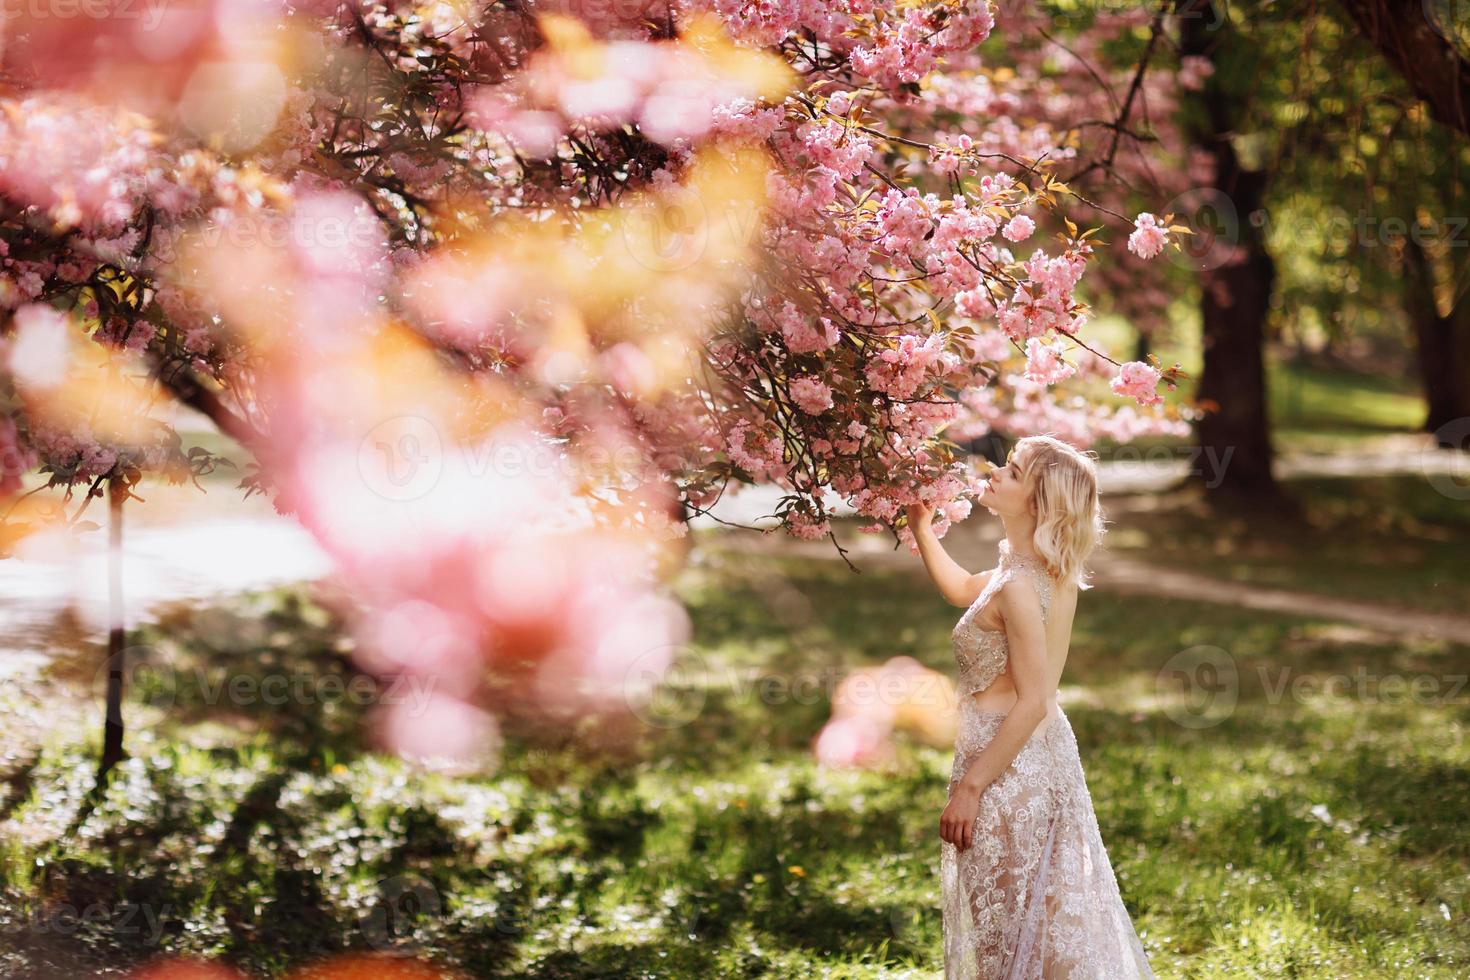 Schönes Mädchen genießt den Duft eines blühenden Baumes. Porträt einer schönen Frau mit blühendem Kirschbaum - Mädchen atmet den Duft von Blumen mit geschlossenen Augen ein - Frühlings-, Natur- und Schönheitskonzept foto